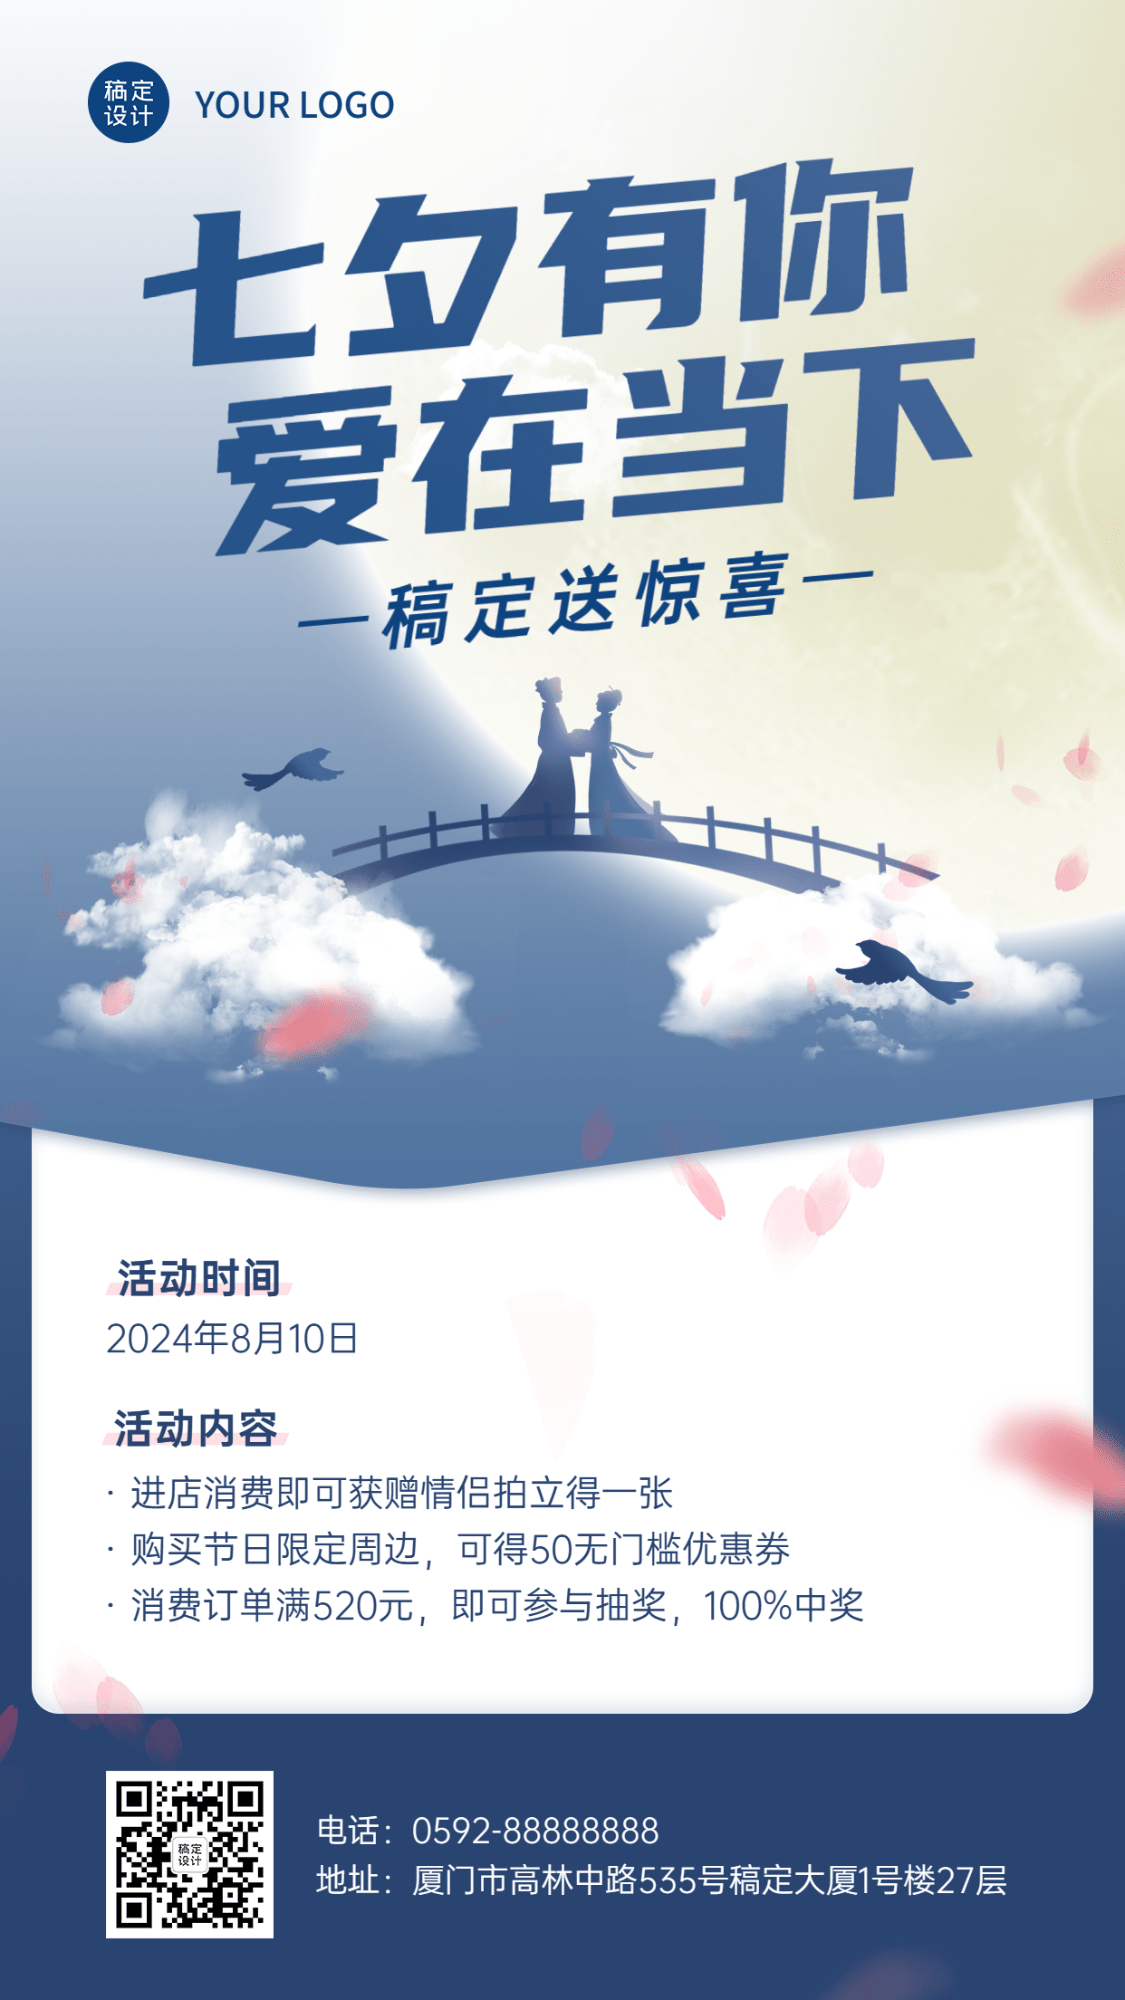 七夕情人节节日活动通知公告手机海报